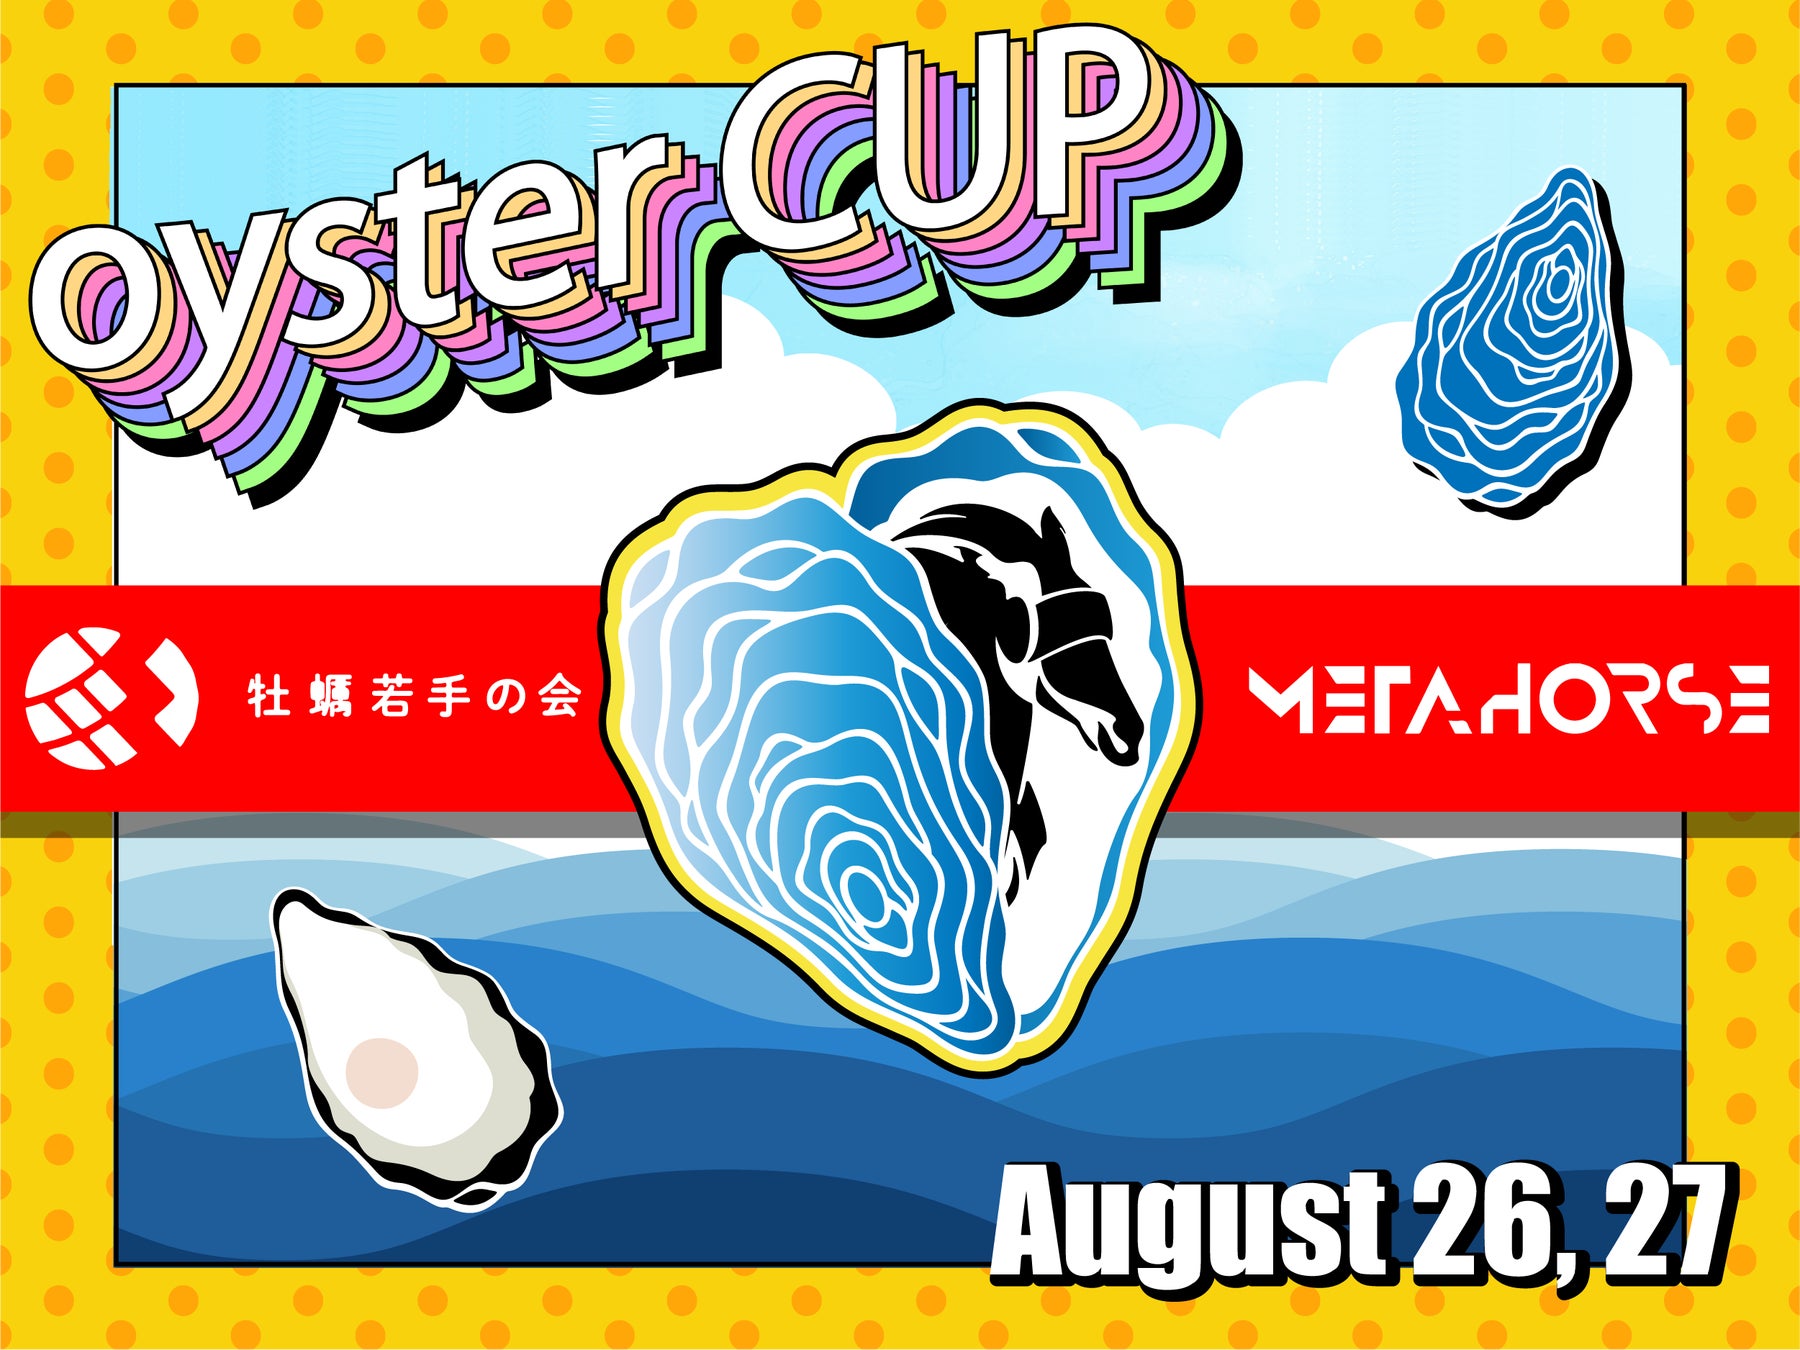 ボードゲーム即売会兼商談見本市
「Tokyo Spiel Festival2023 -浅草ボードゲーム夏祭り-」が
8月27日(日)、浅草橋ヒューリックホールで開催！